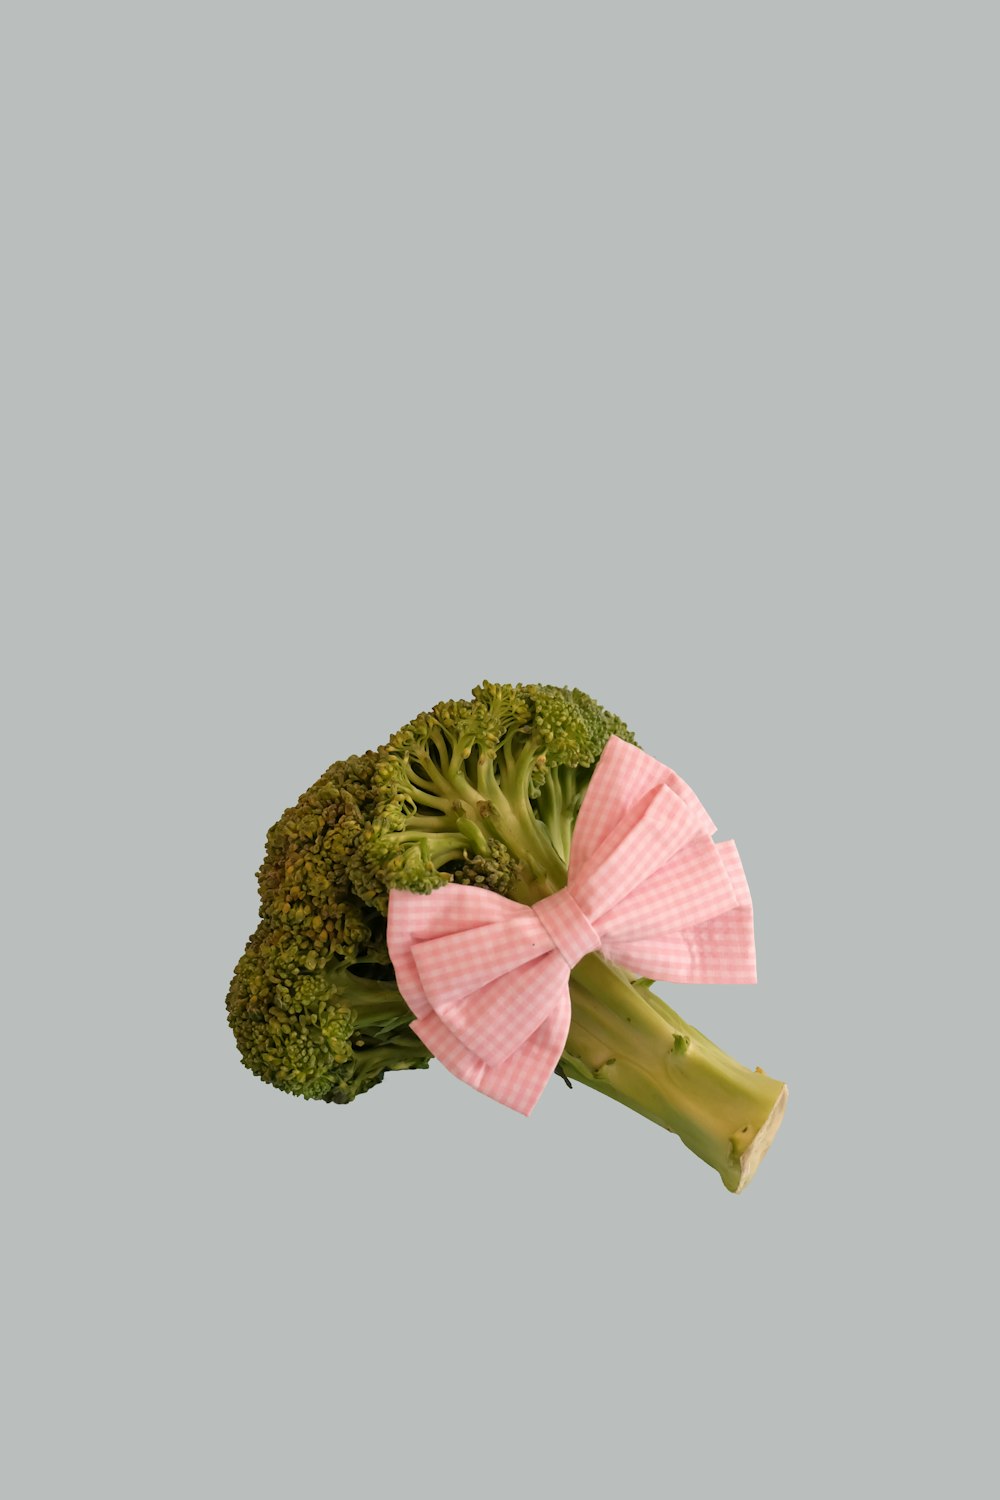 Verduras de brócoli con lazo rosa